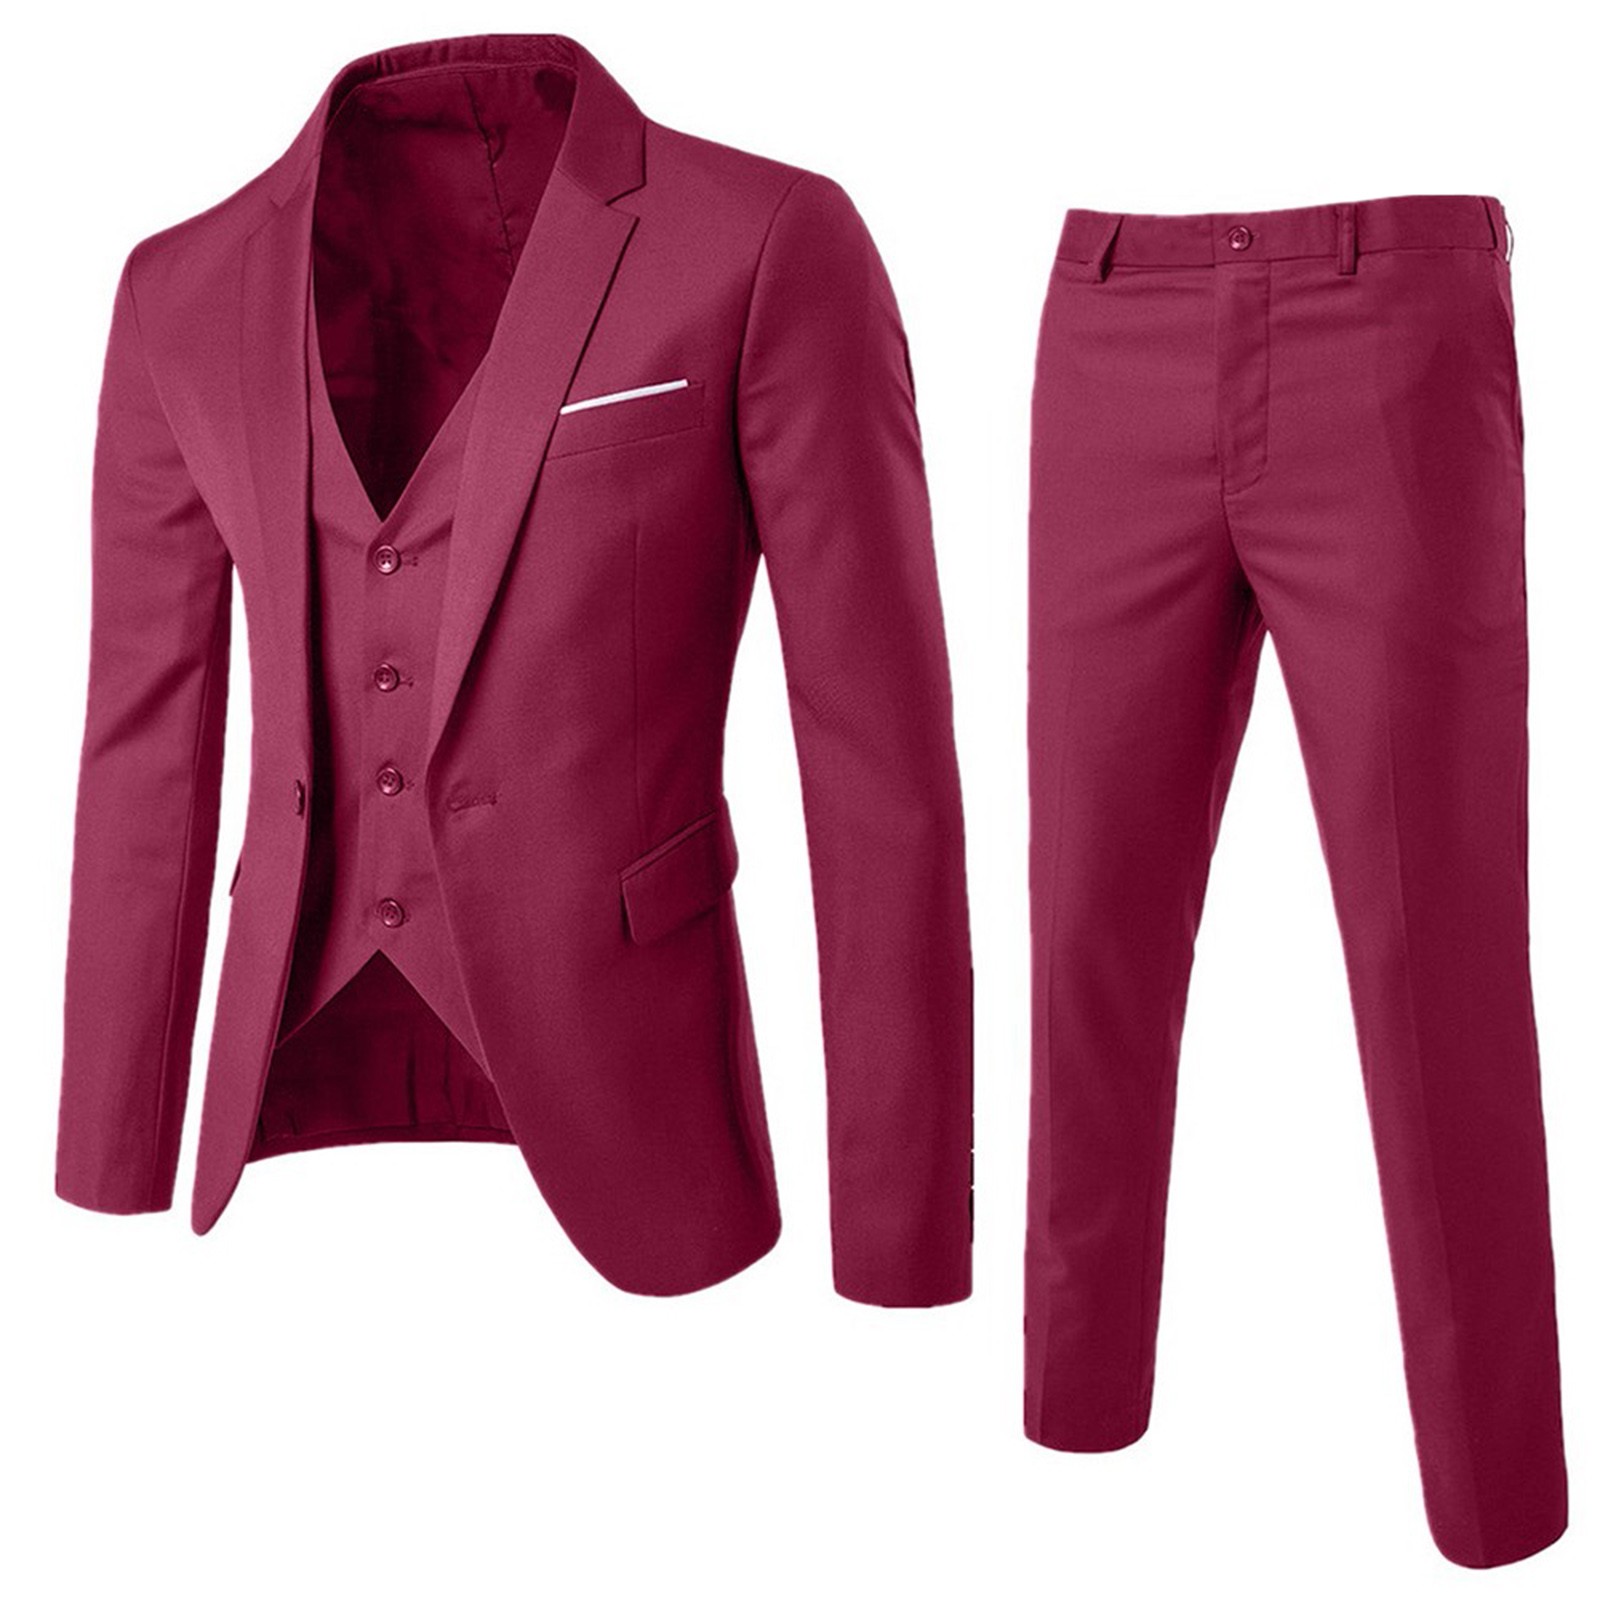 Jiyugala Suits for Men Suit Slim 3-Piece Suit R Business Wedding Party ...